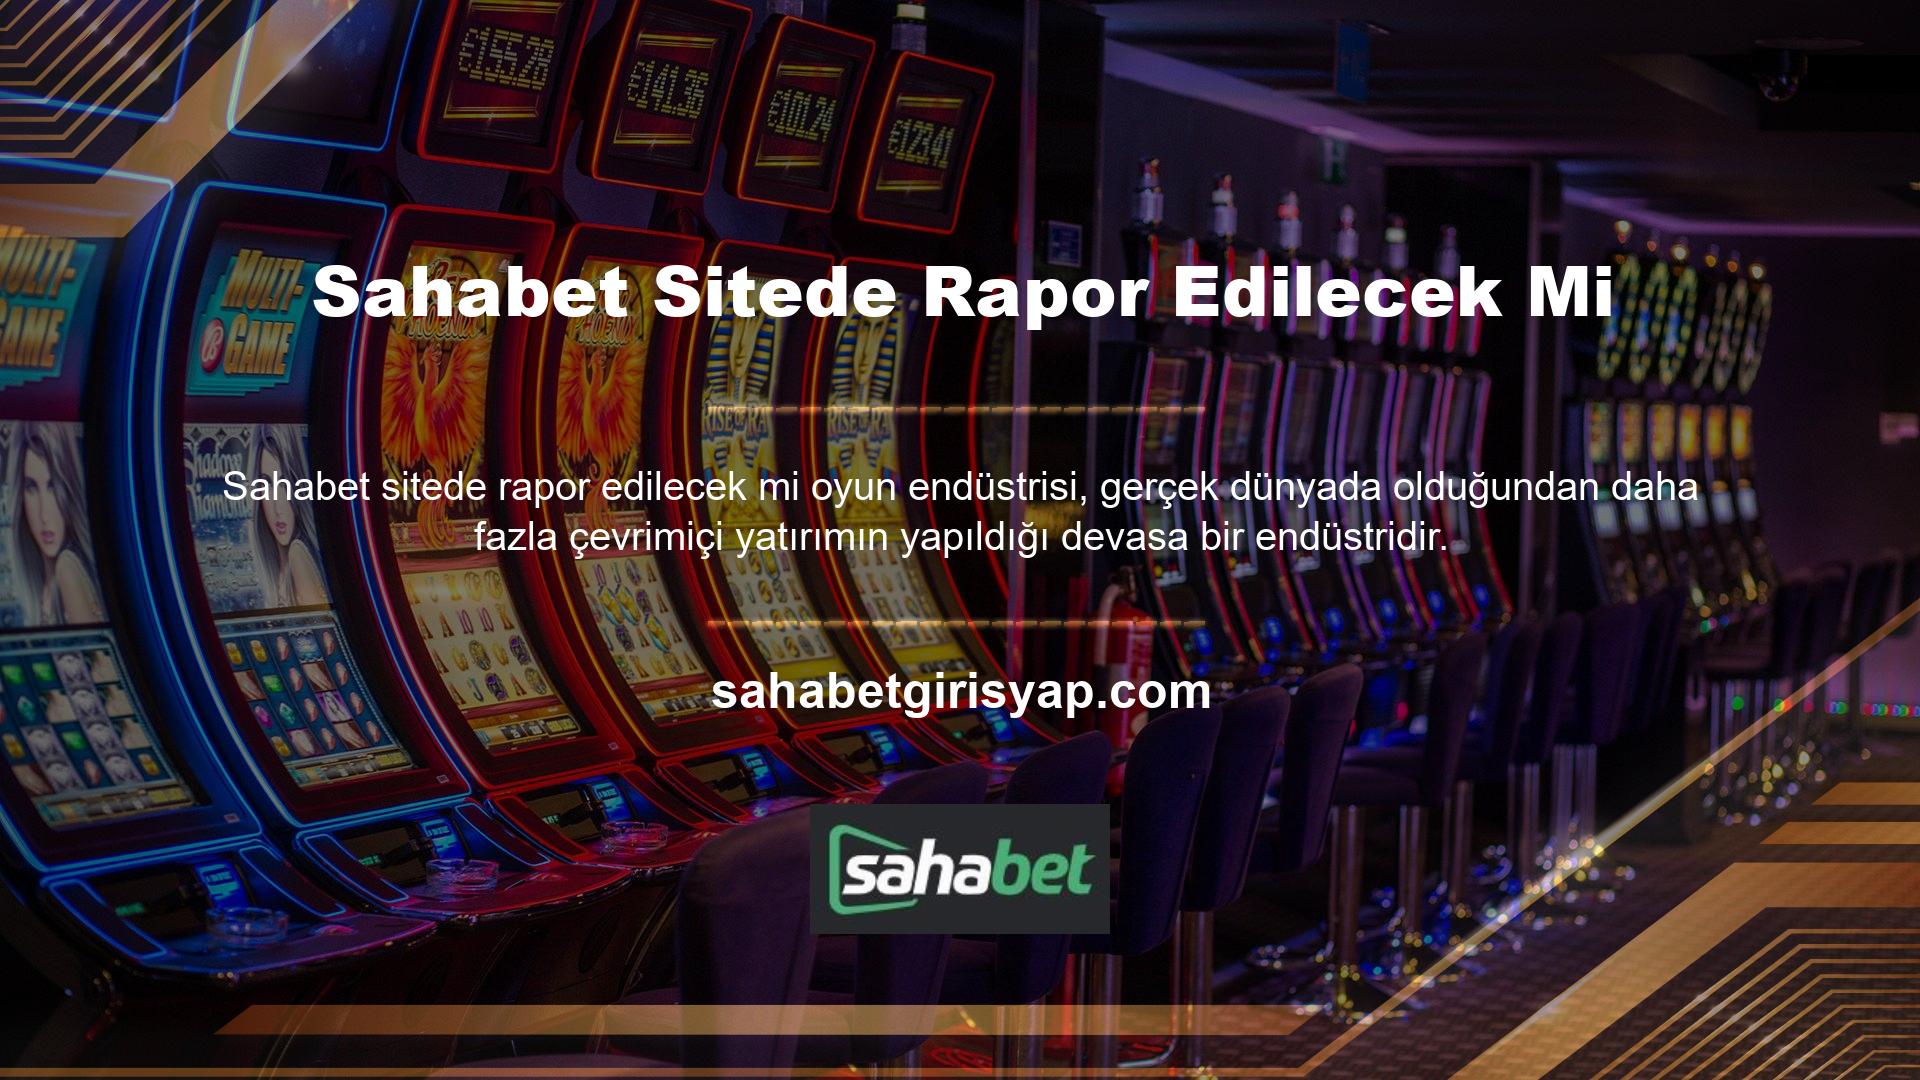 Çevrimiçi casinoya artan ilgi, yüksek oranlar ve erişilebilirlikten kaynaklanmaktadır